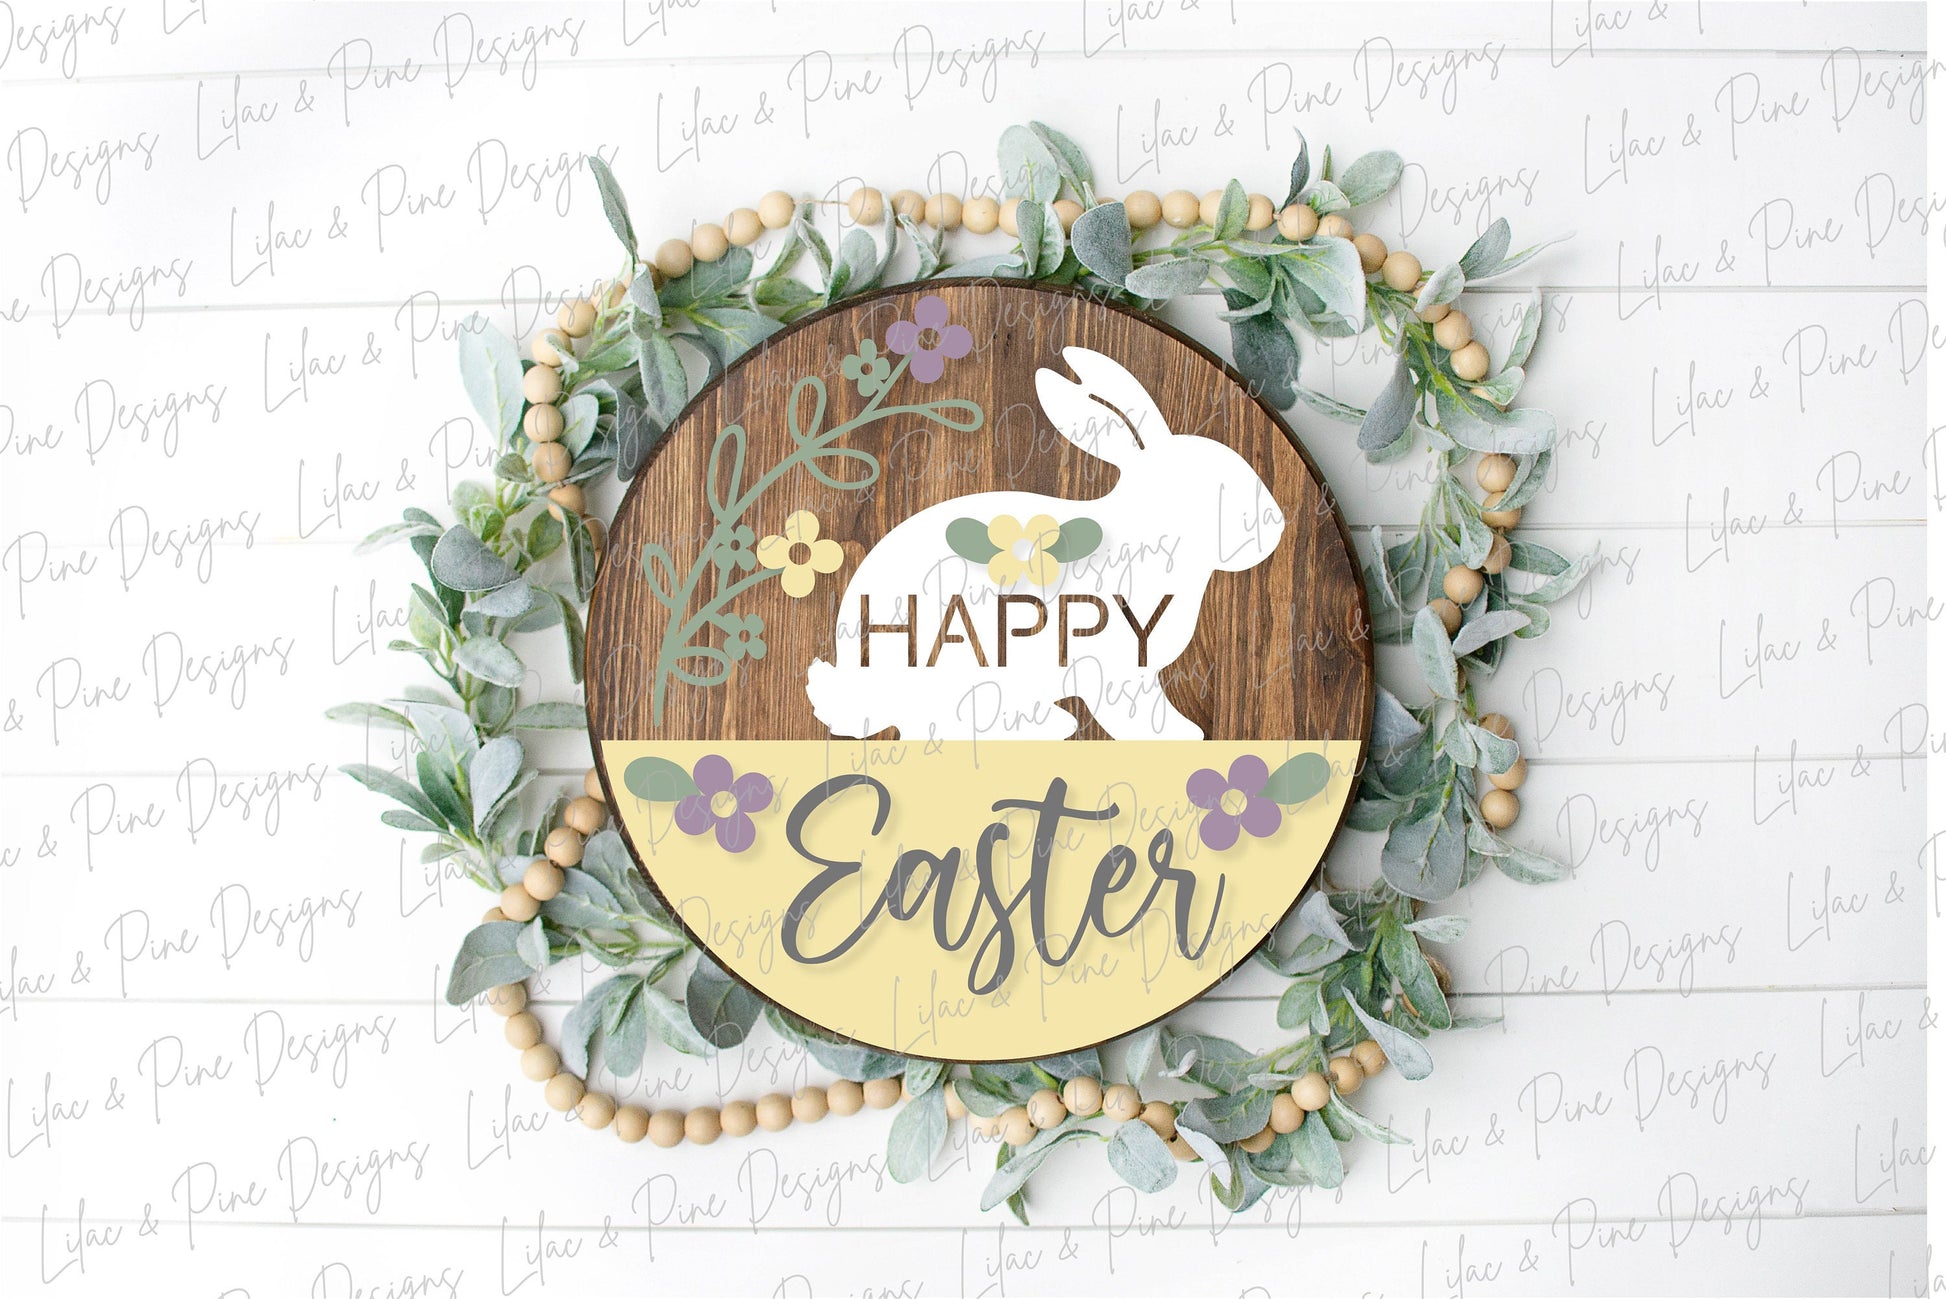 Happy Easter Welcome door hanger, Easter porch sign SVG, Easter bunny SVG, floral svg, Farmhouse Easter decor, Glowforge svg, laser cut file